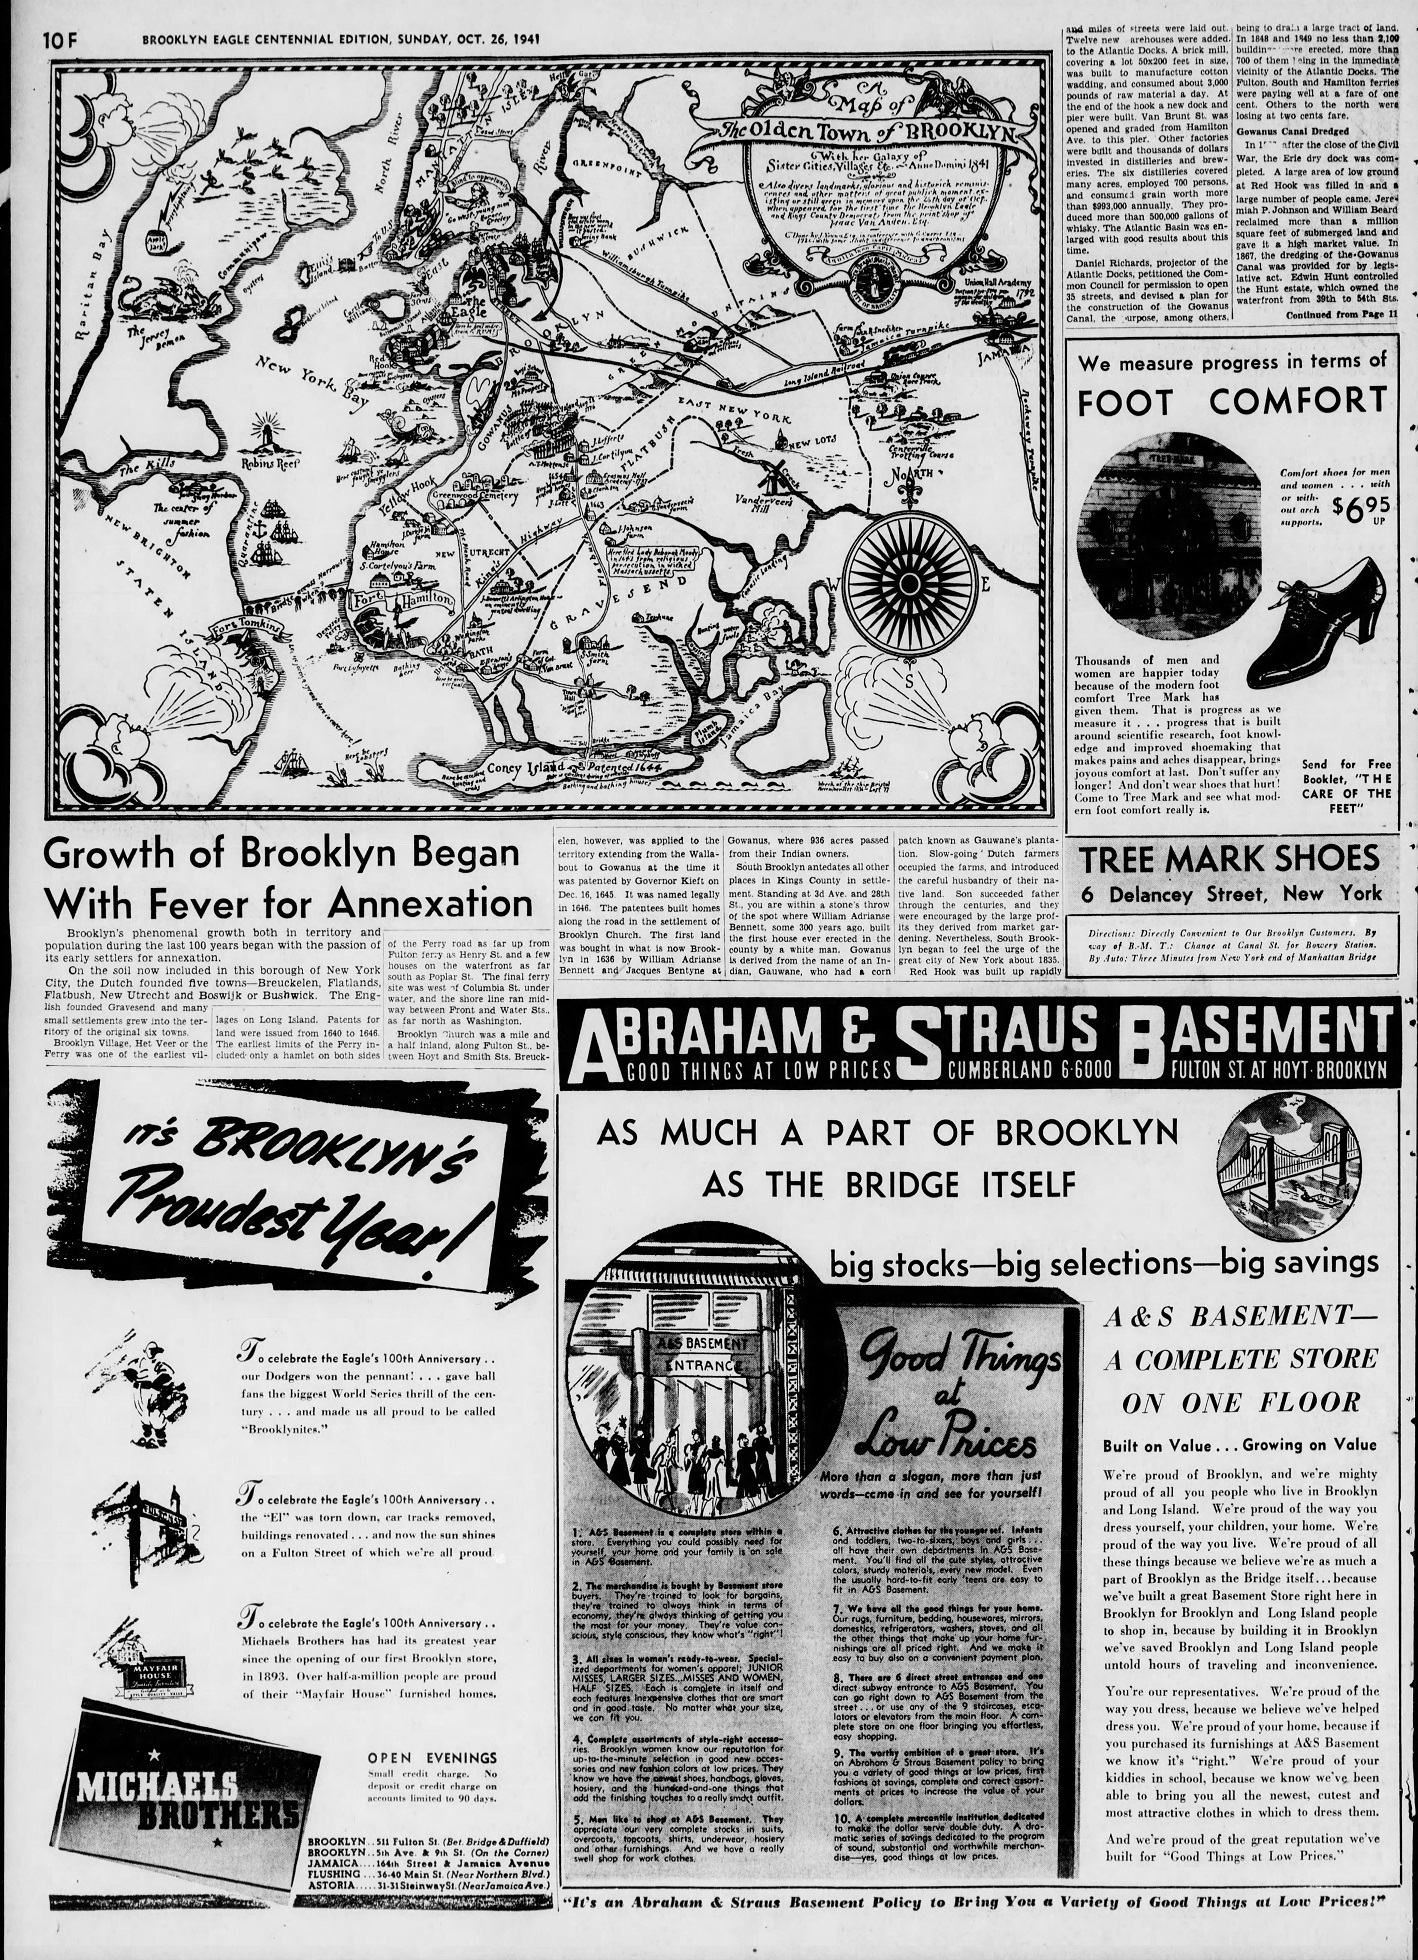 The_Brooklyn_Daily_Eagle_Sun__Oct_26__1941_(13).jpg